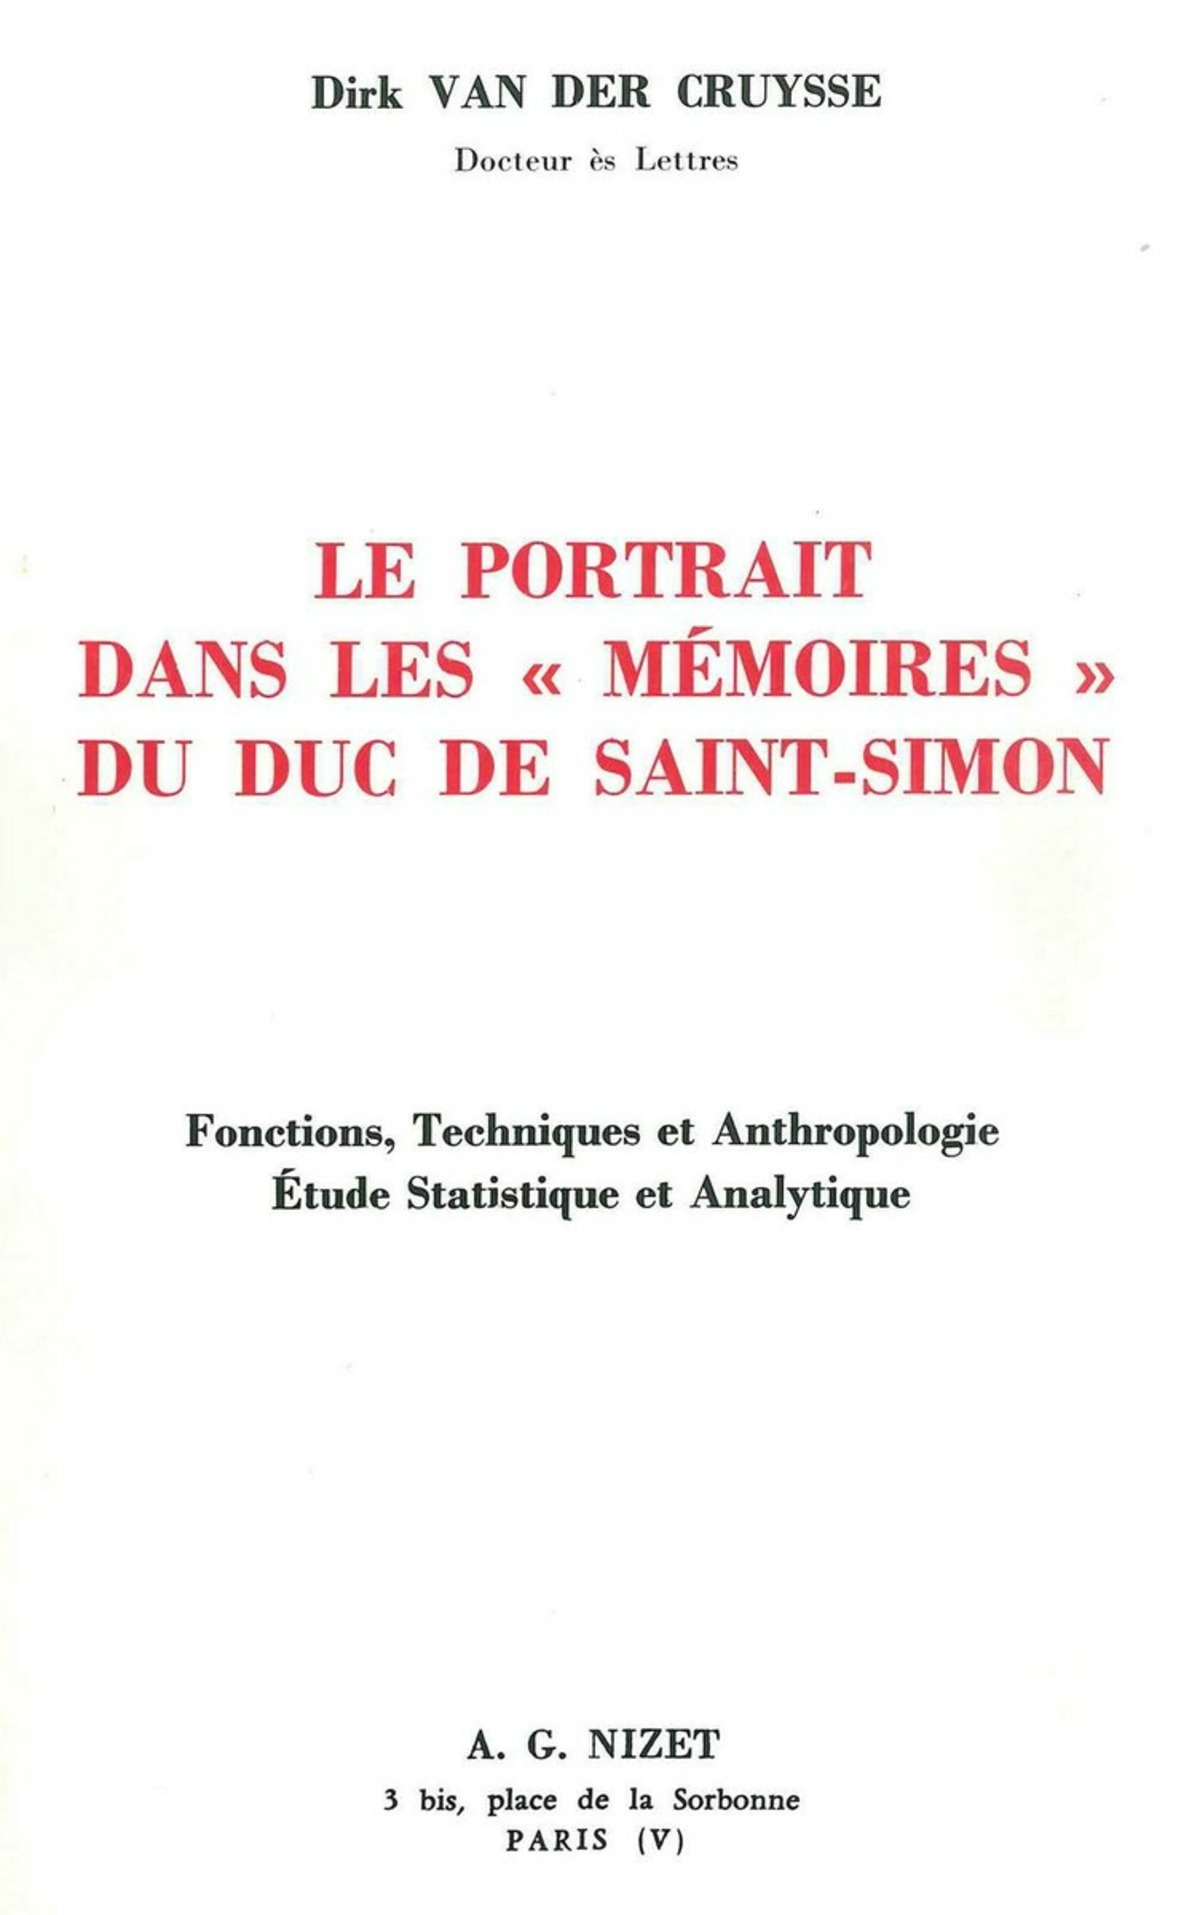 Le Portrait dans les Mémoires du duc de Saint-Simon